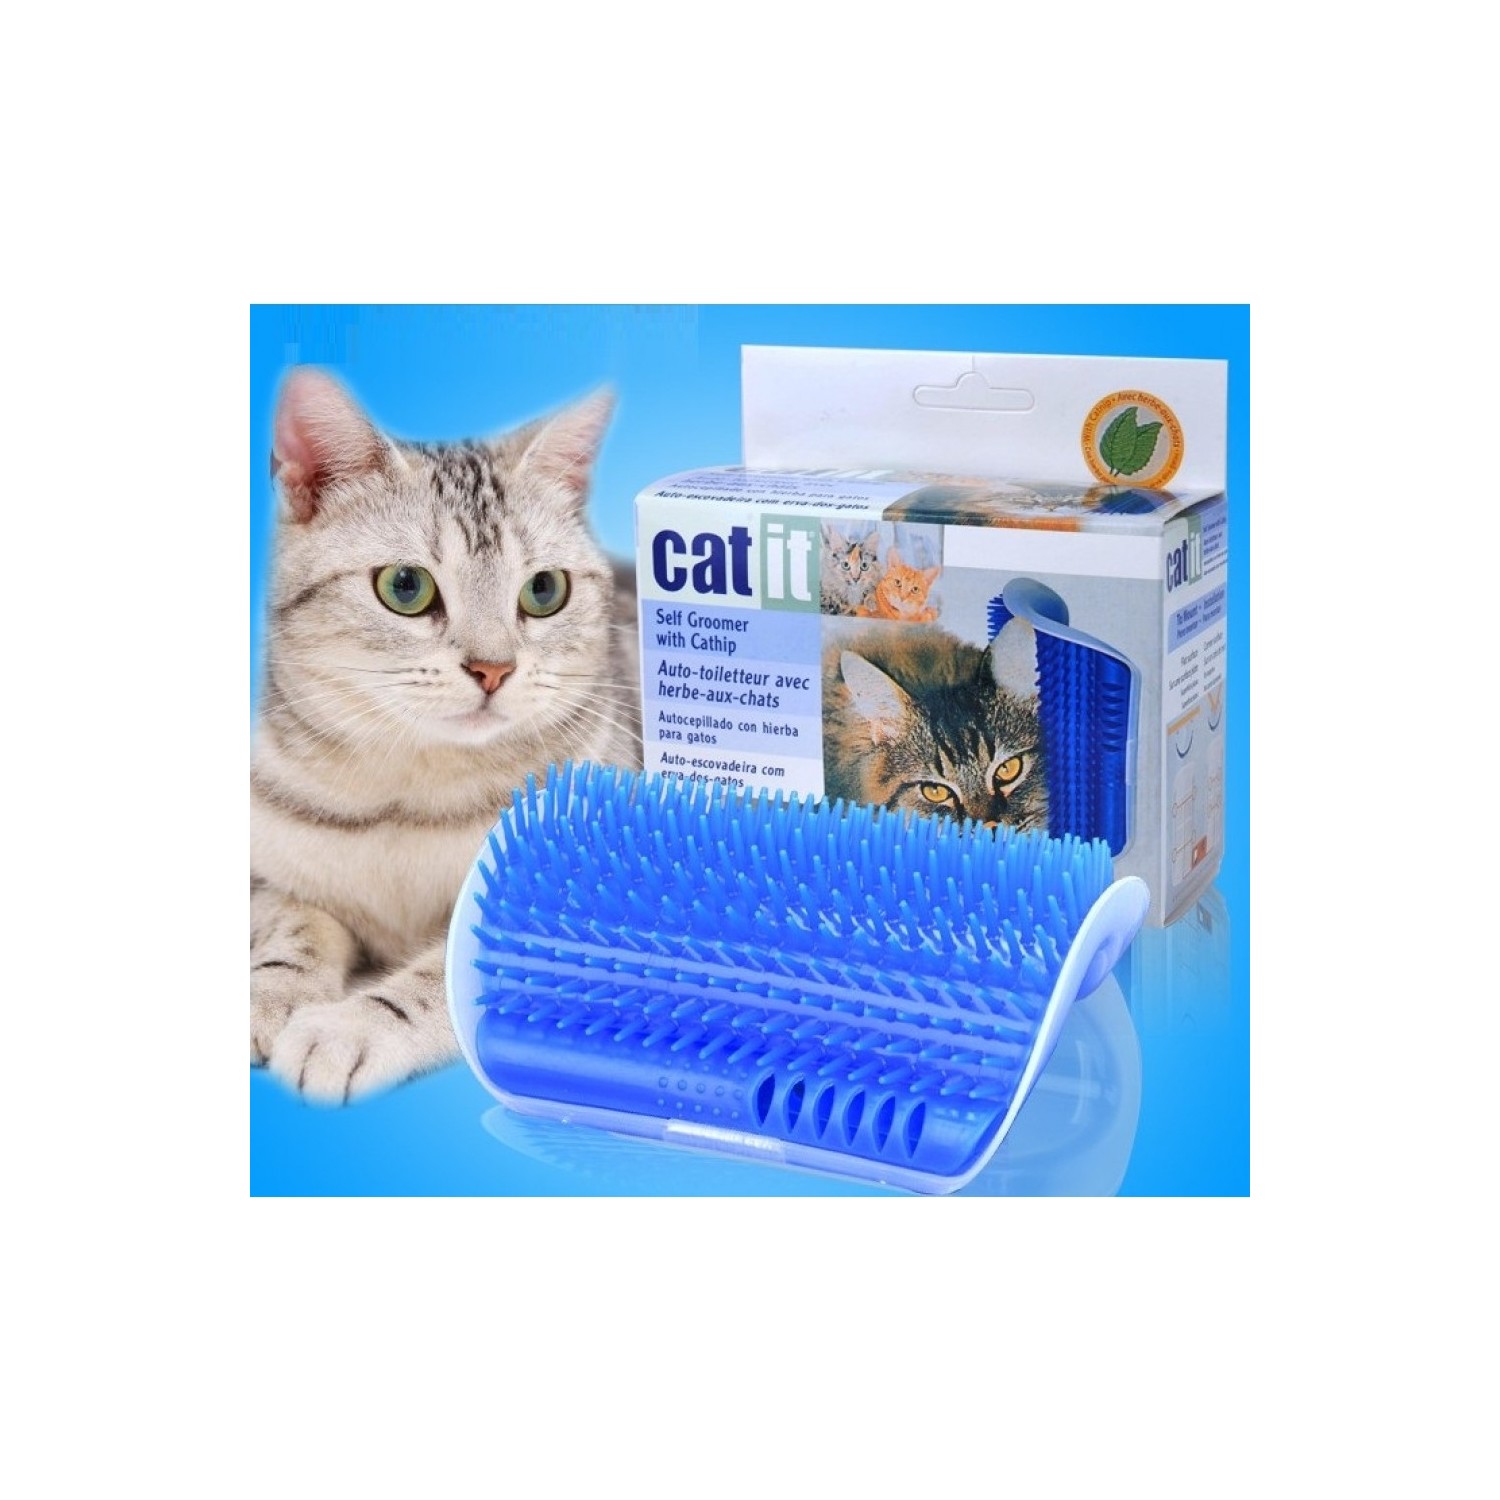 Cat İt Kedi Kaşıma Kaşınma Aparatı Catit (Kedi Nanesi Fiyatı